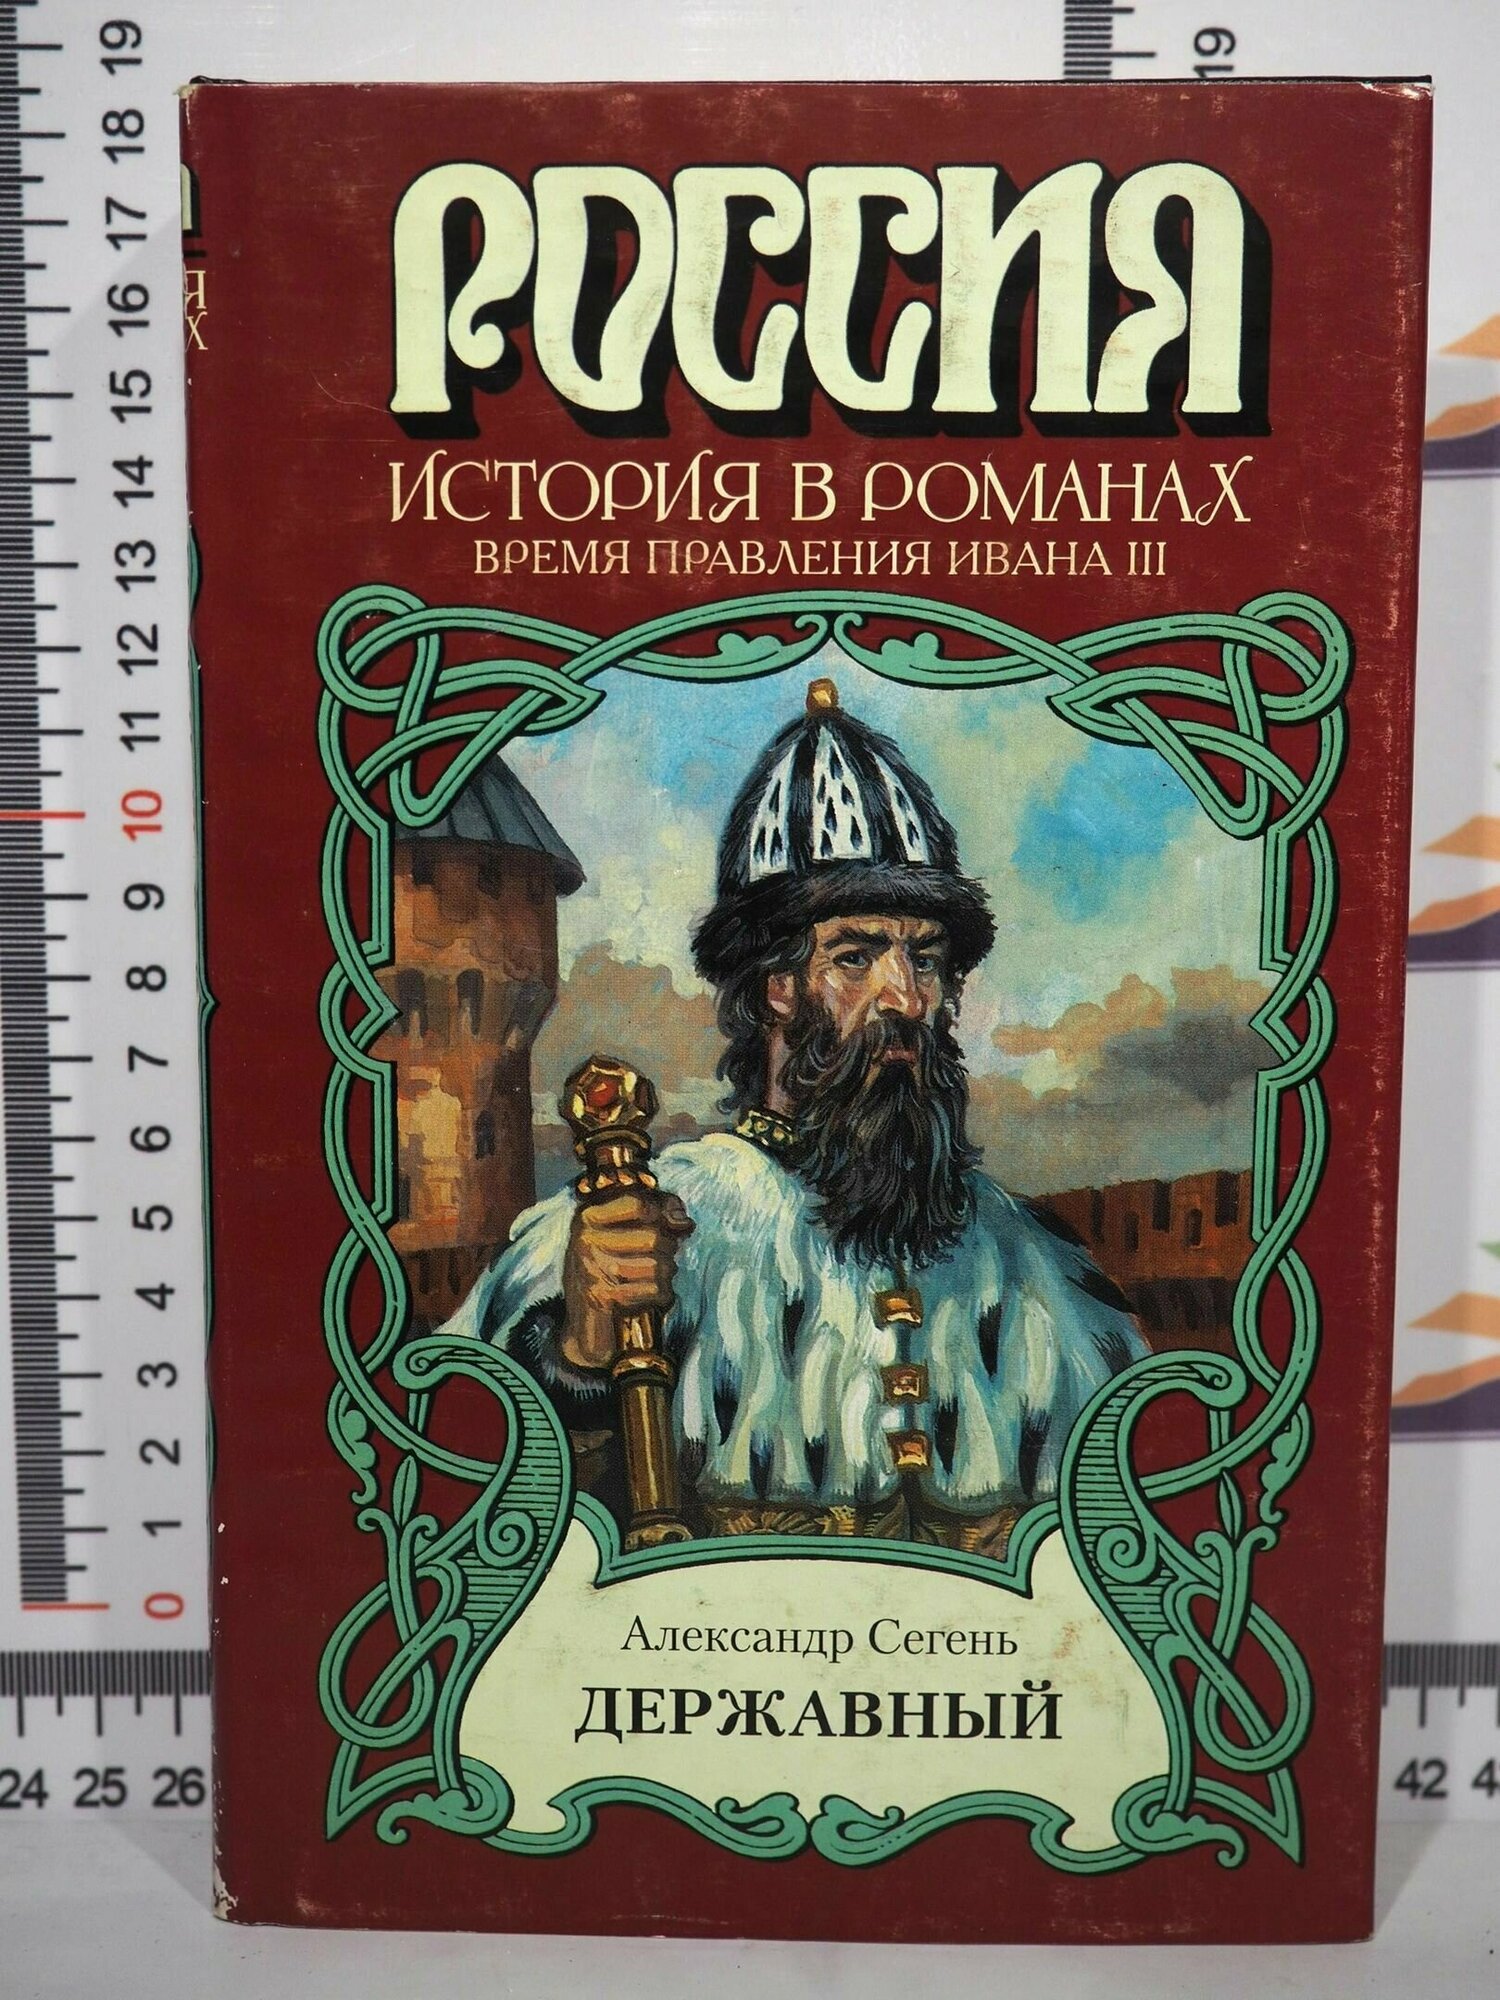 А. Ю. Сегень / Державный / Россия / История в романах